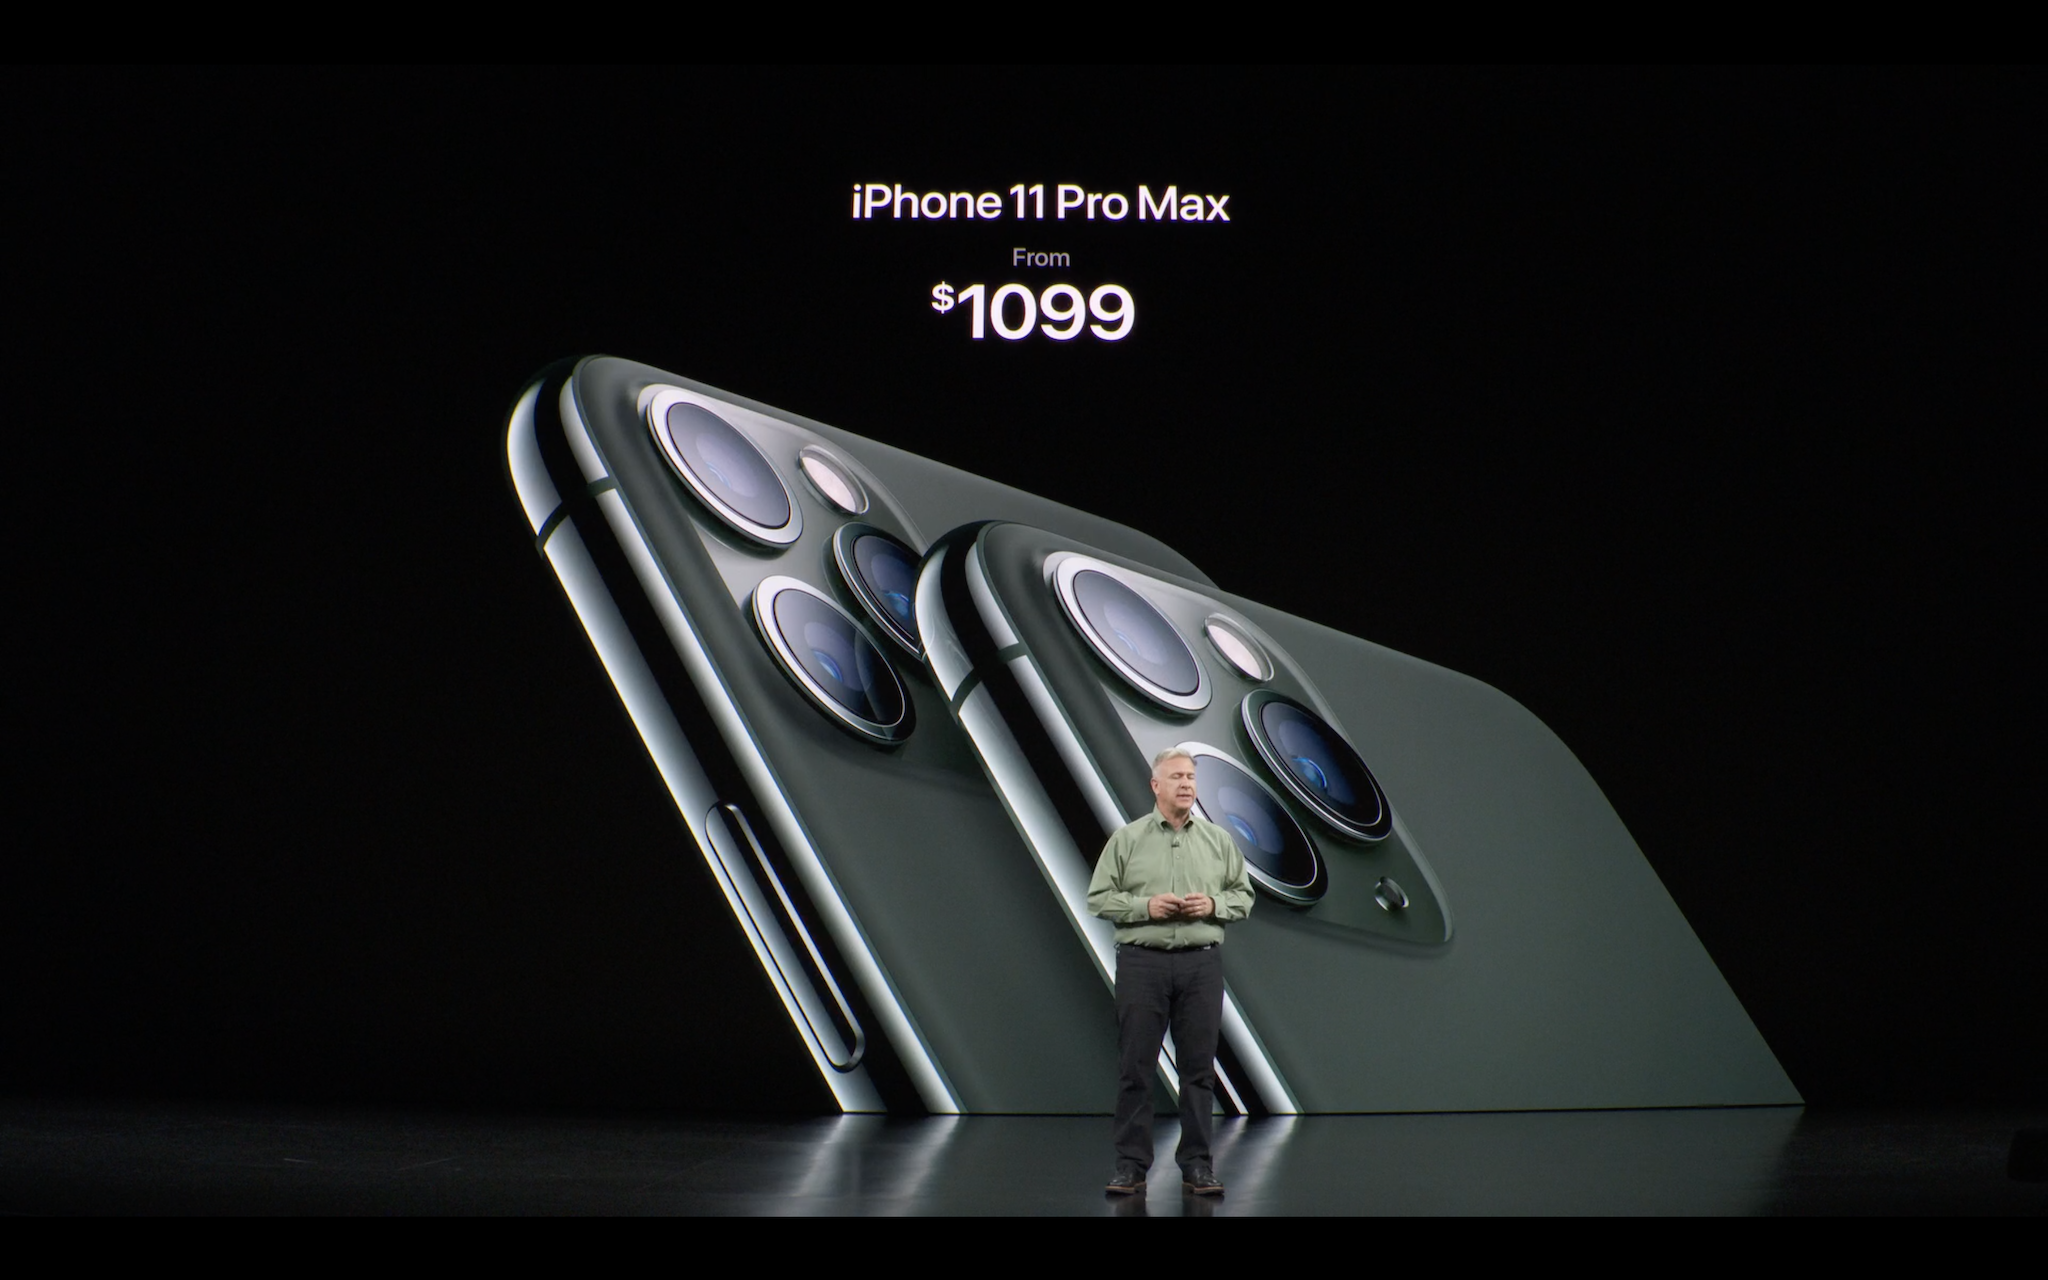 iPhone 11 Pro chính thức ra mắt với hệ thống cụm 3 camera sau đầu tiên của Apple. iPhone 11 Pro có giá từ 999 USD, trong khi iPhone Pro Max có giá từ 1.099 USD.